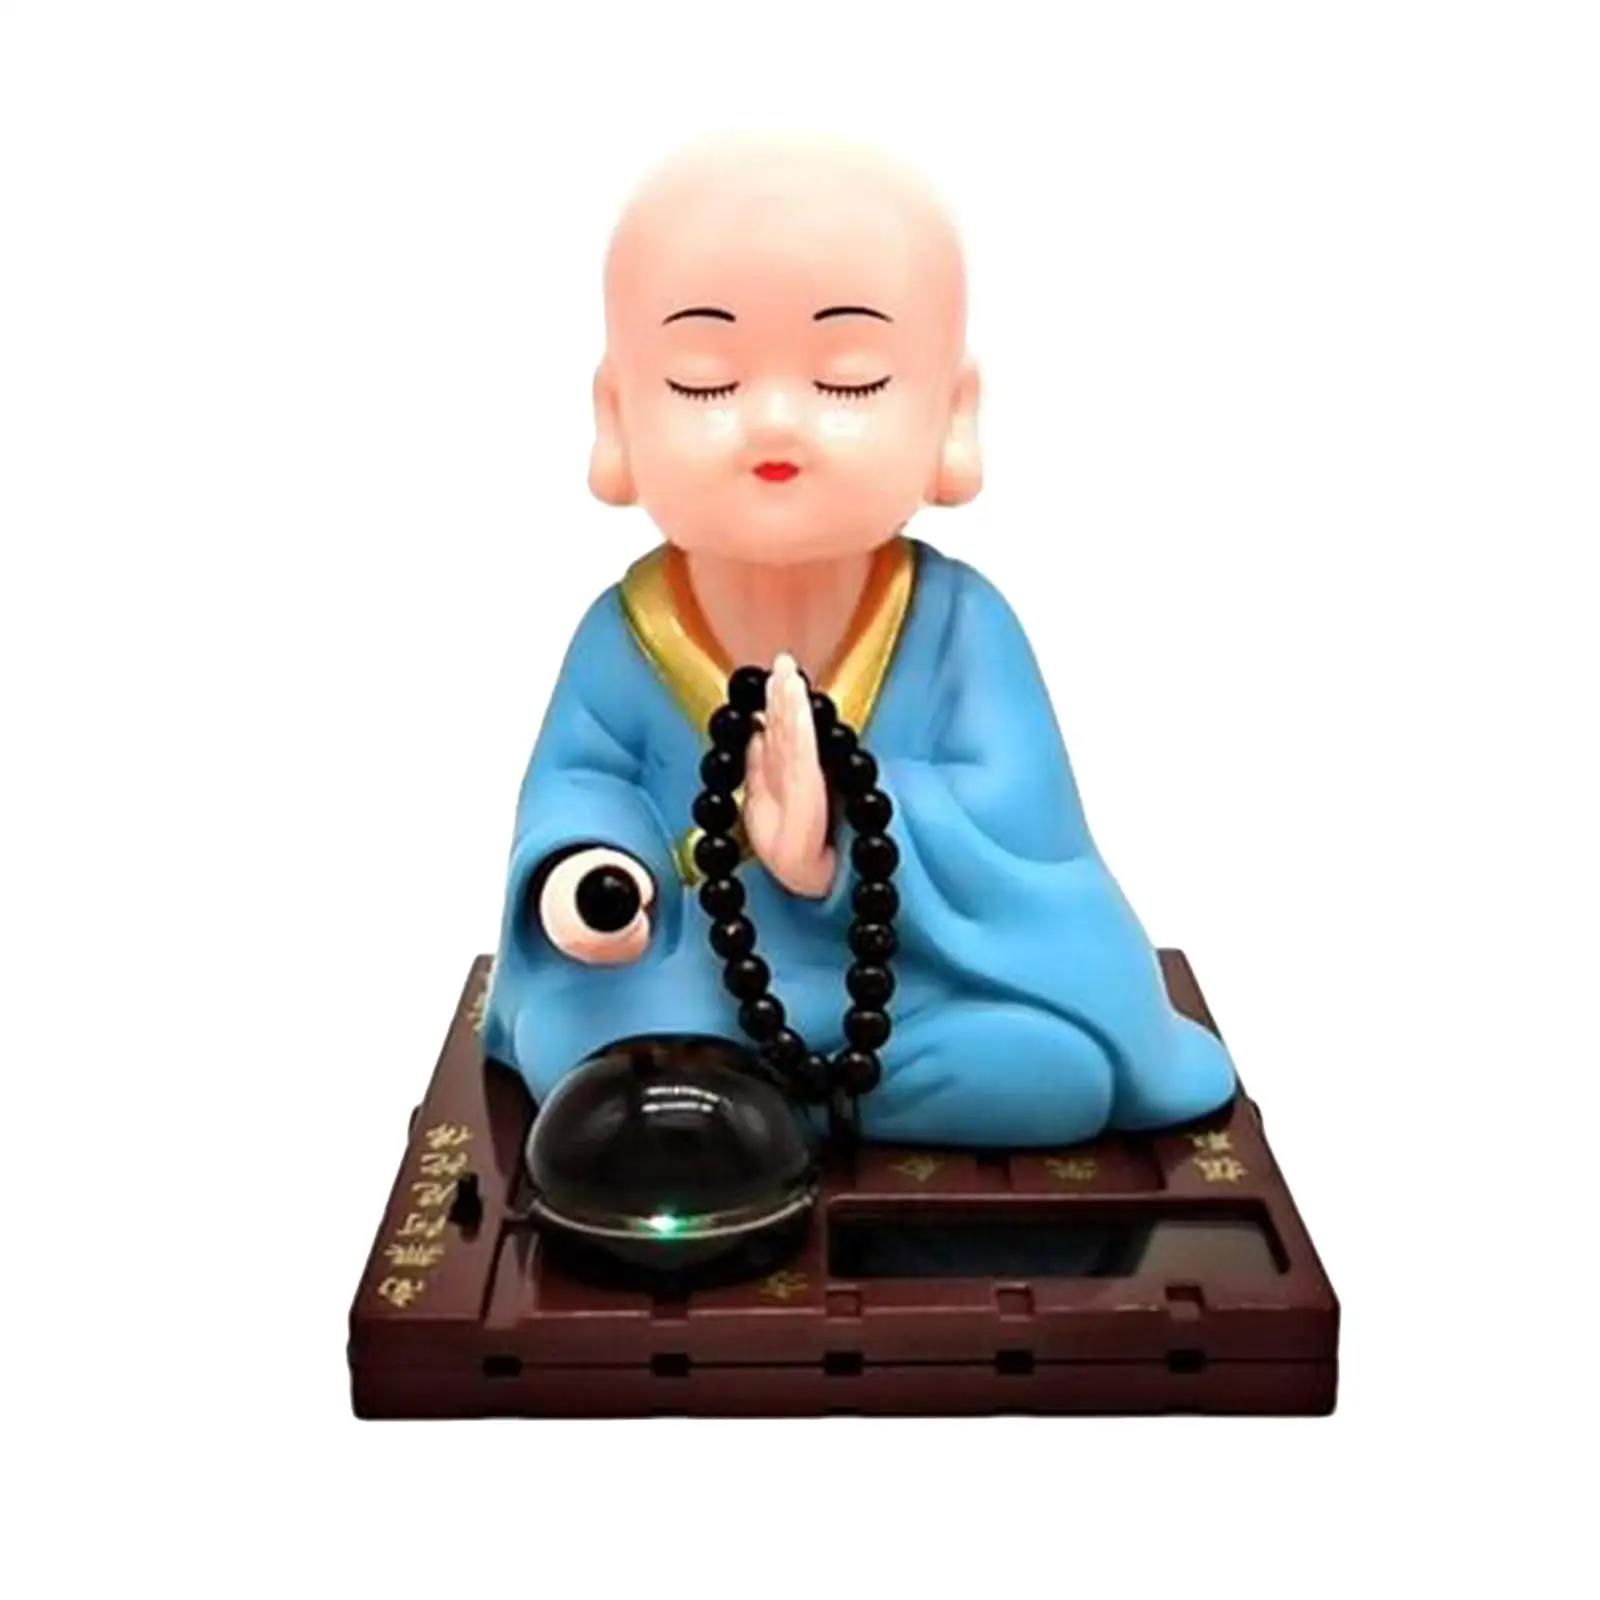 2x  Dancing Toy Buddhist  Nodding Head Toy Car Decoration Blue